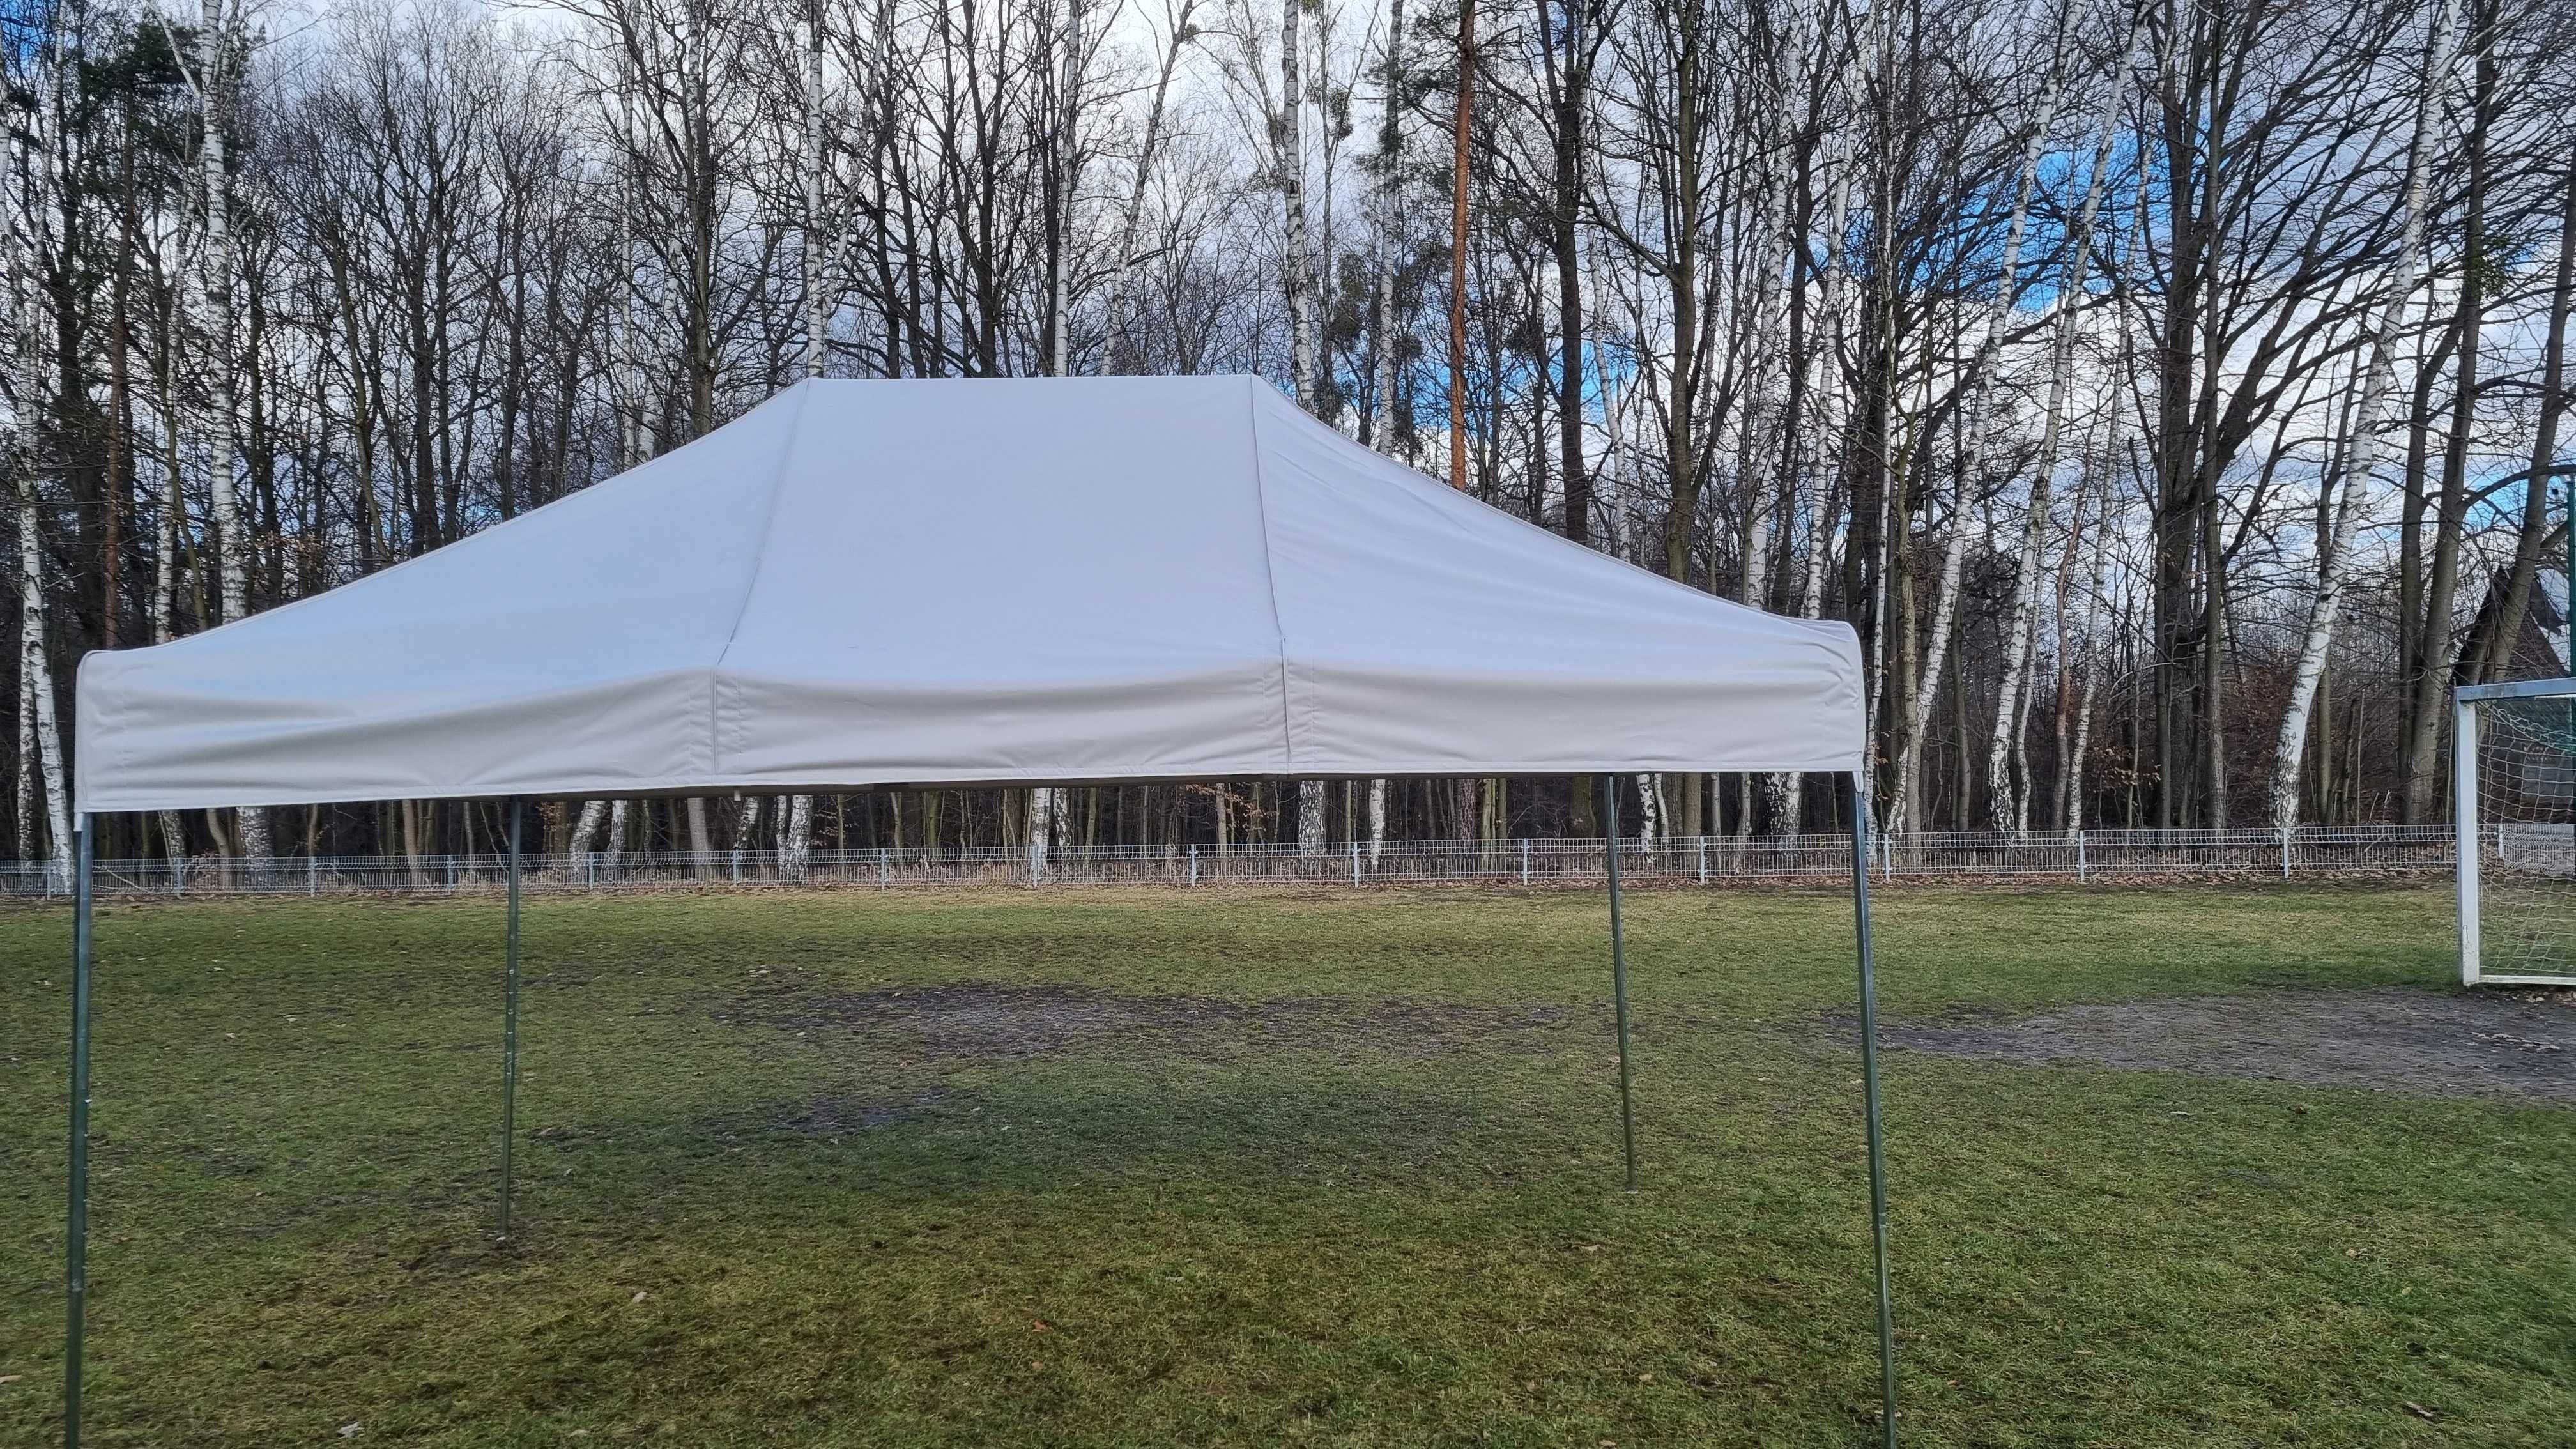 Namiot spawalniczy 2 x 3 (stal) namiot roboczy, zgrzewanie rur. ATEST.